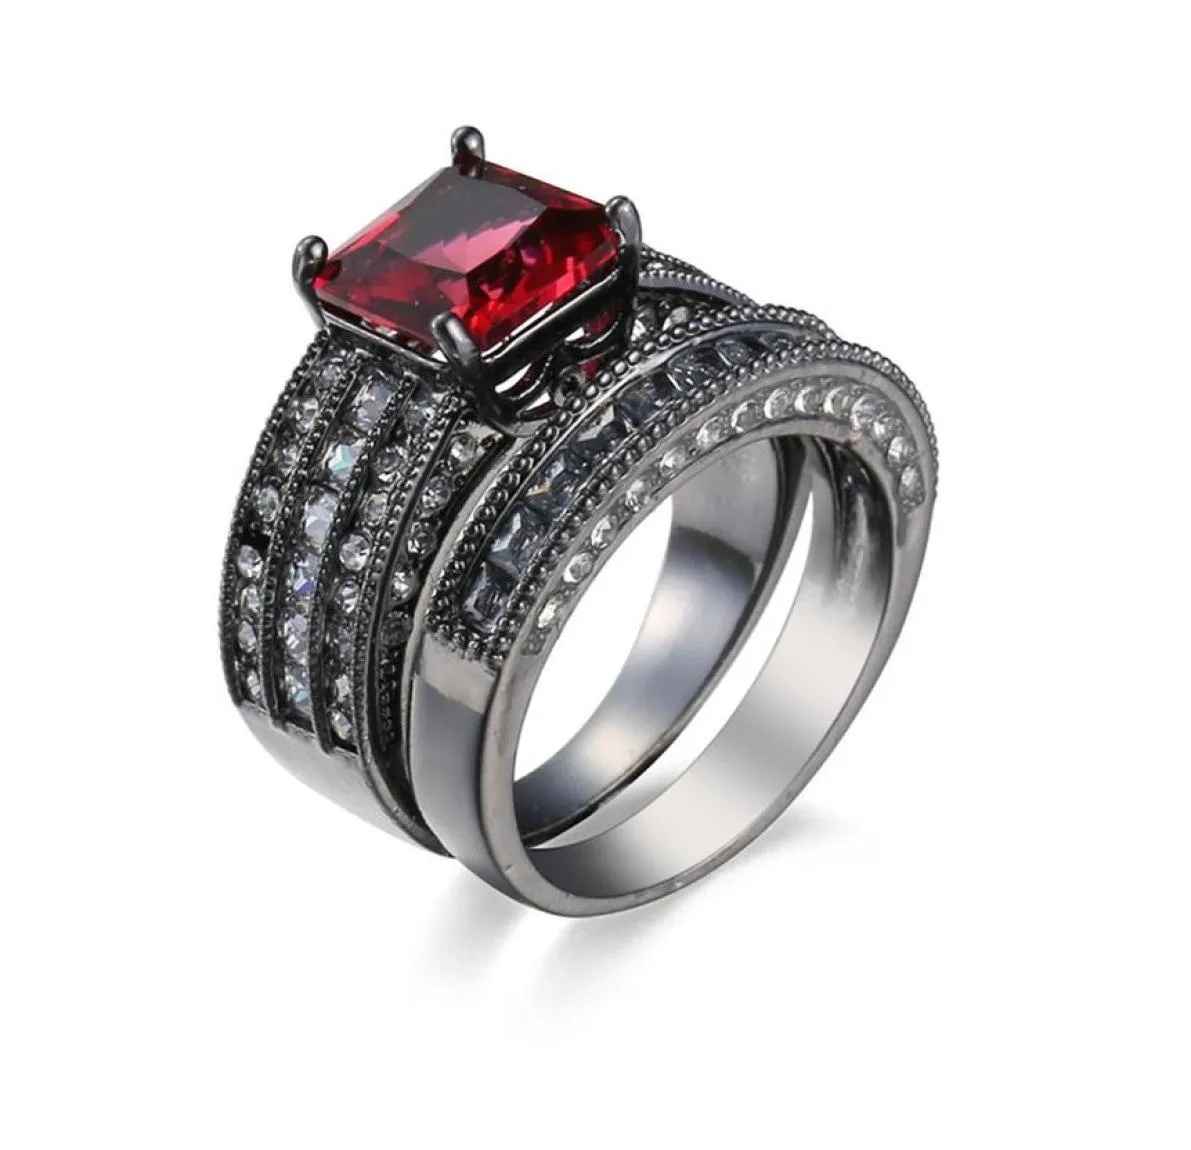 Anillo lleno de oro negro con gemas de circón de rubí rojo, anillo de boda, conjunto de anillo de promesa para dedo SZ610176q9146734